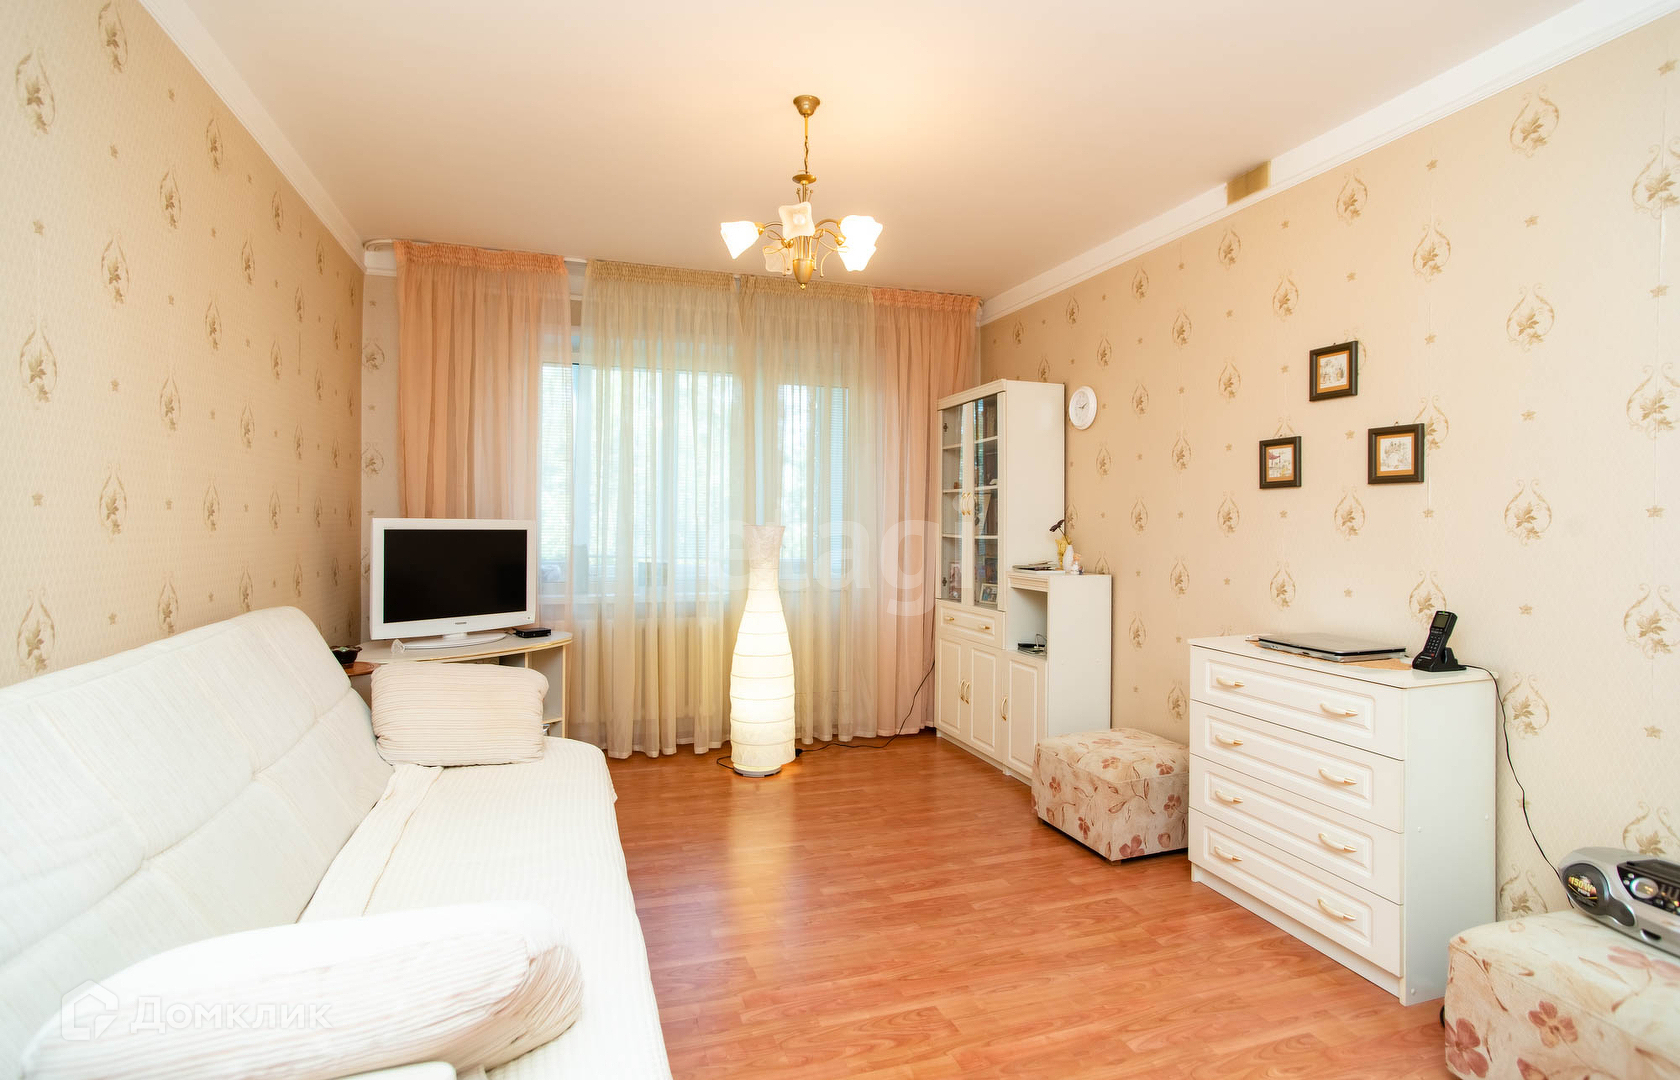 Купить 1 комнатную квартиру в Ульяновске. Купить 1 комнатную в ульяновске недорого